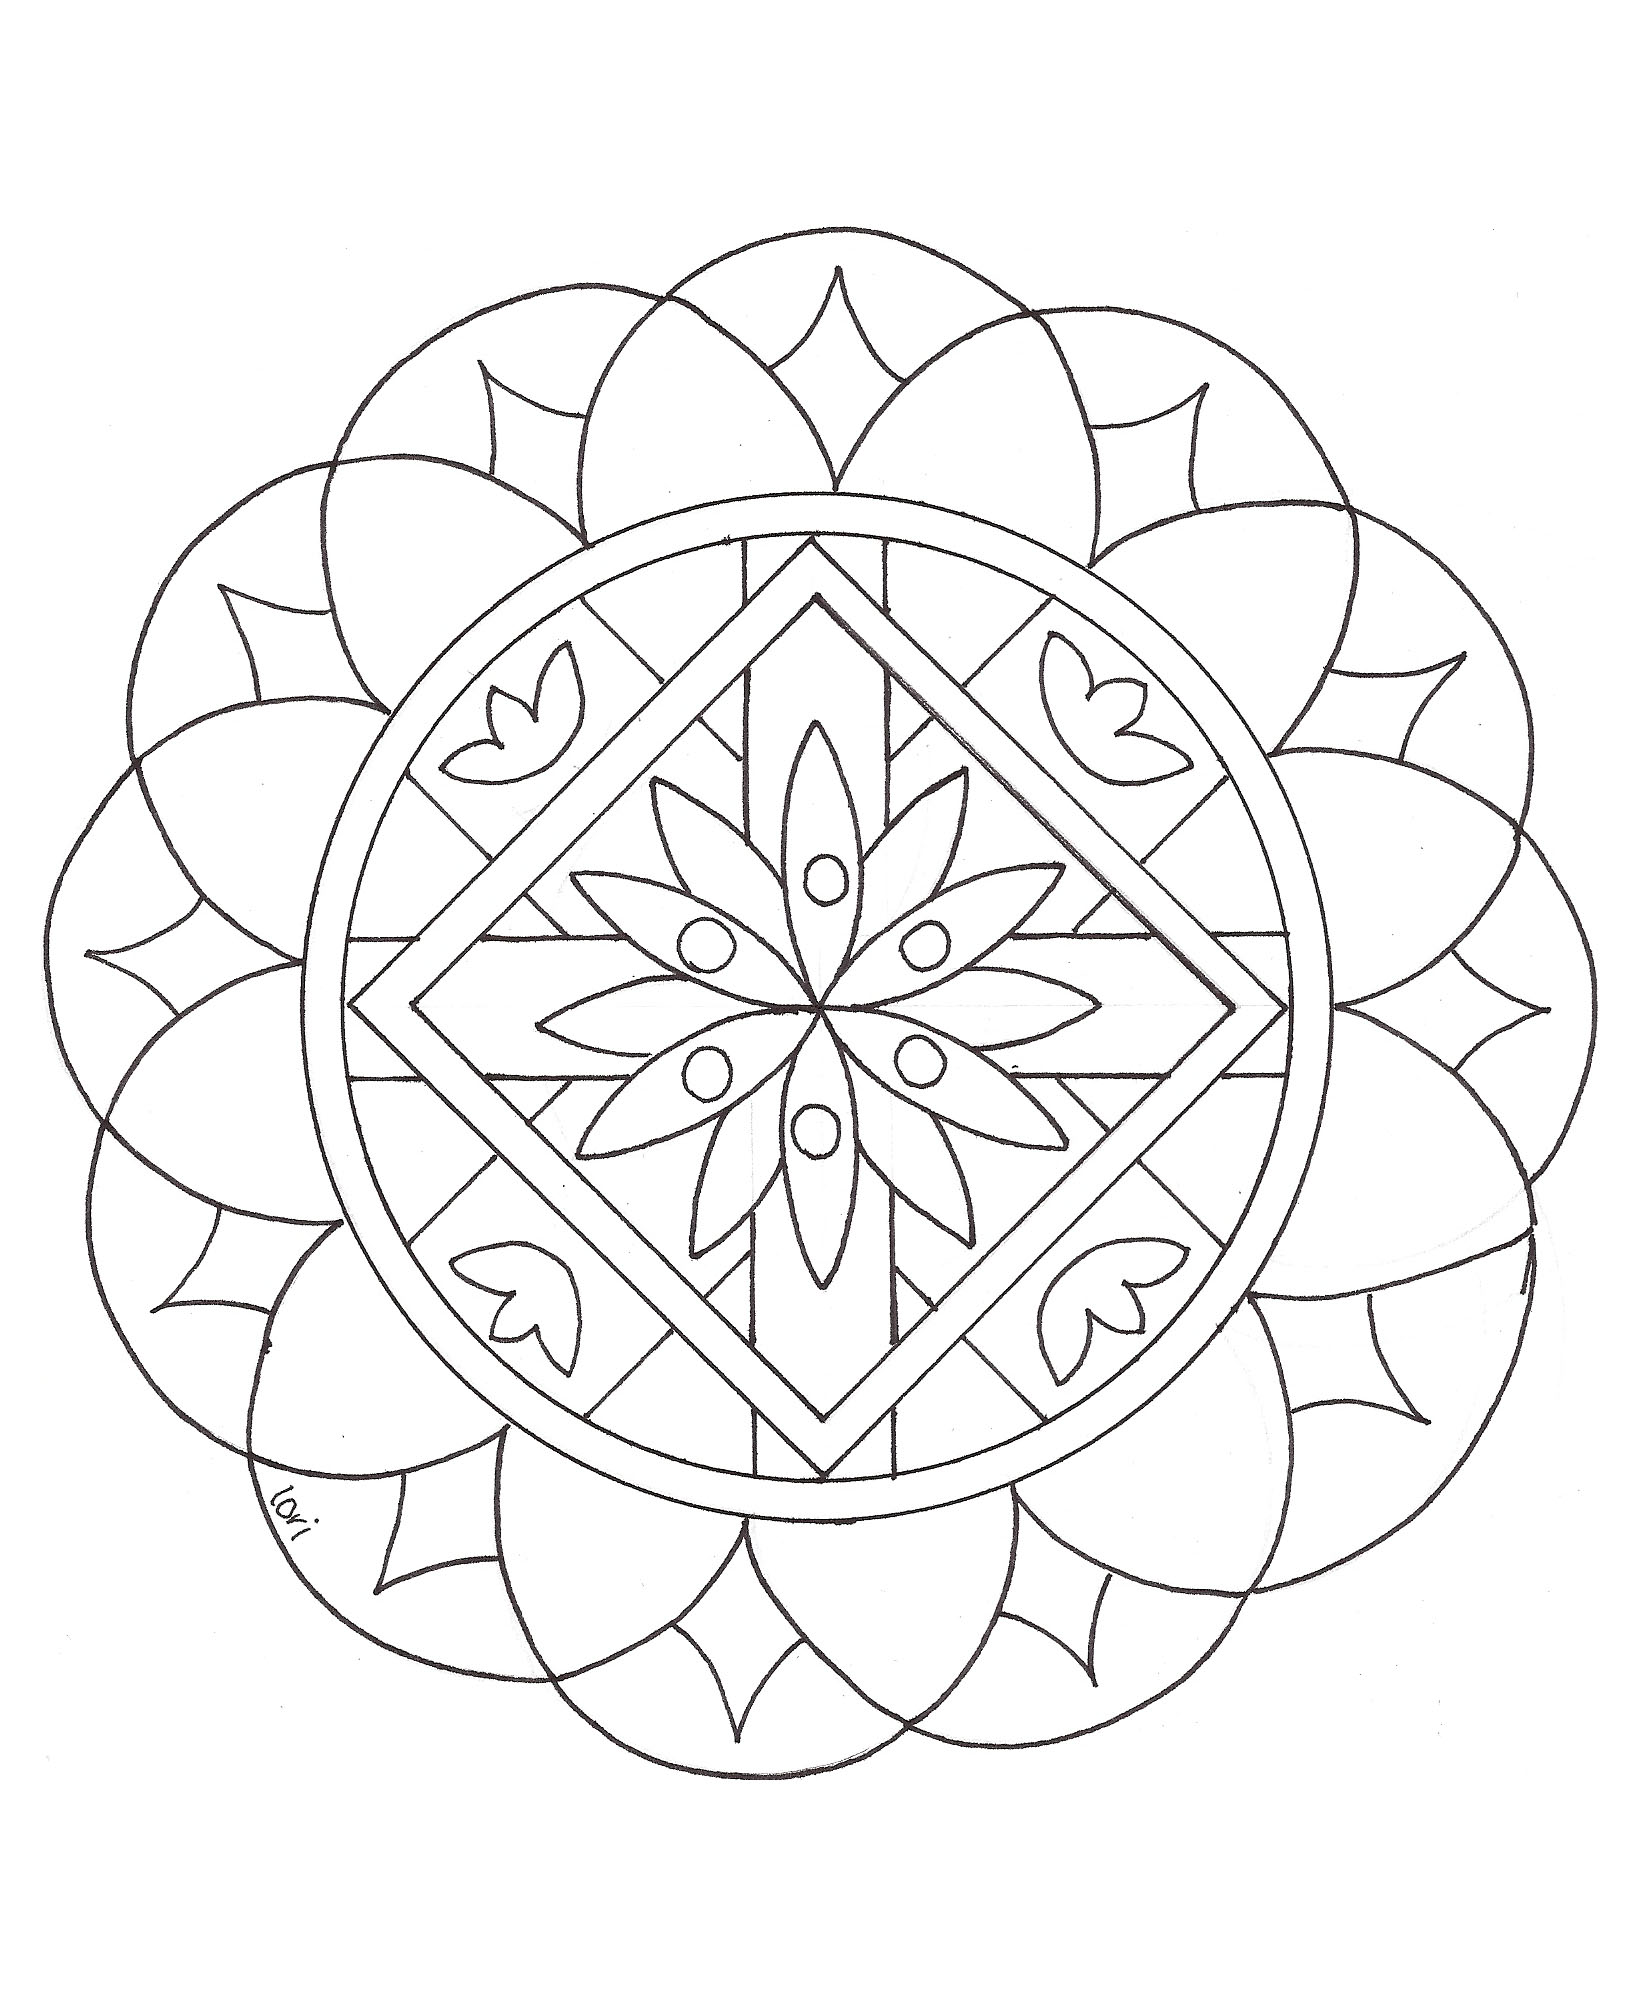 Increíble Dibujos para colorear de Mandalas para imprimir y colorear